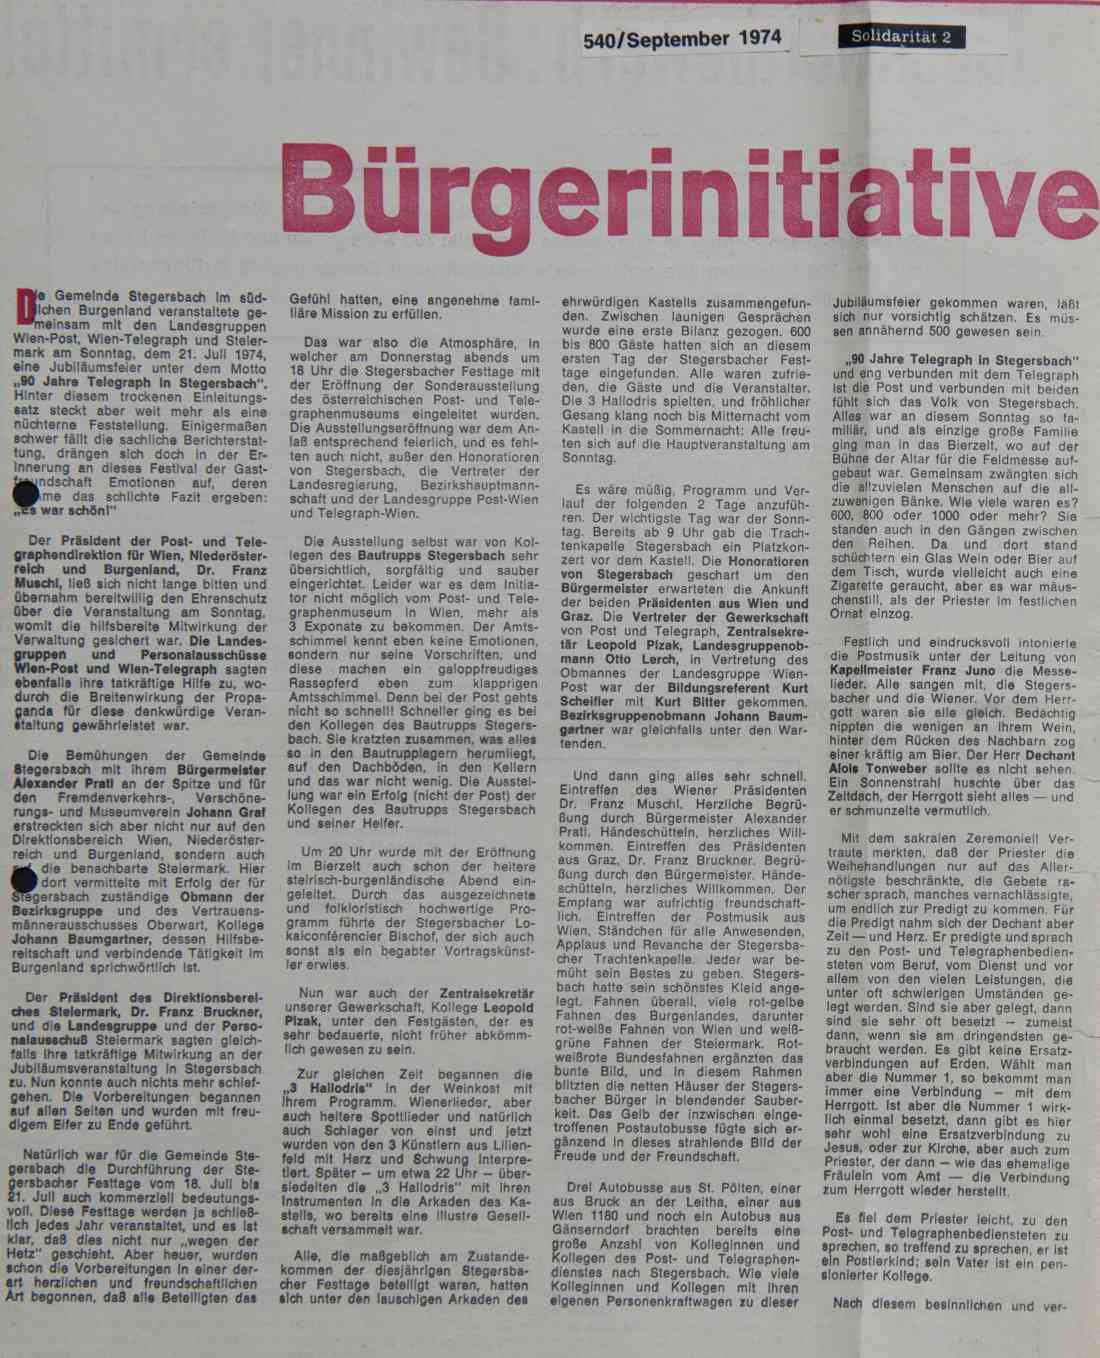 Zeitungsartikel 90 Jahre Telegraph in Stegersbach im September 1974